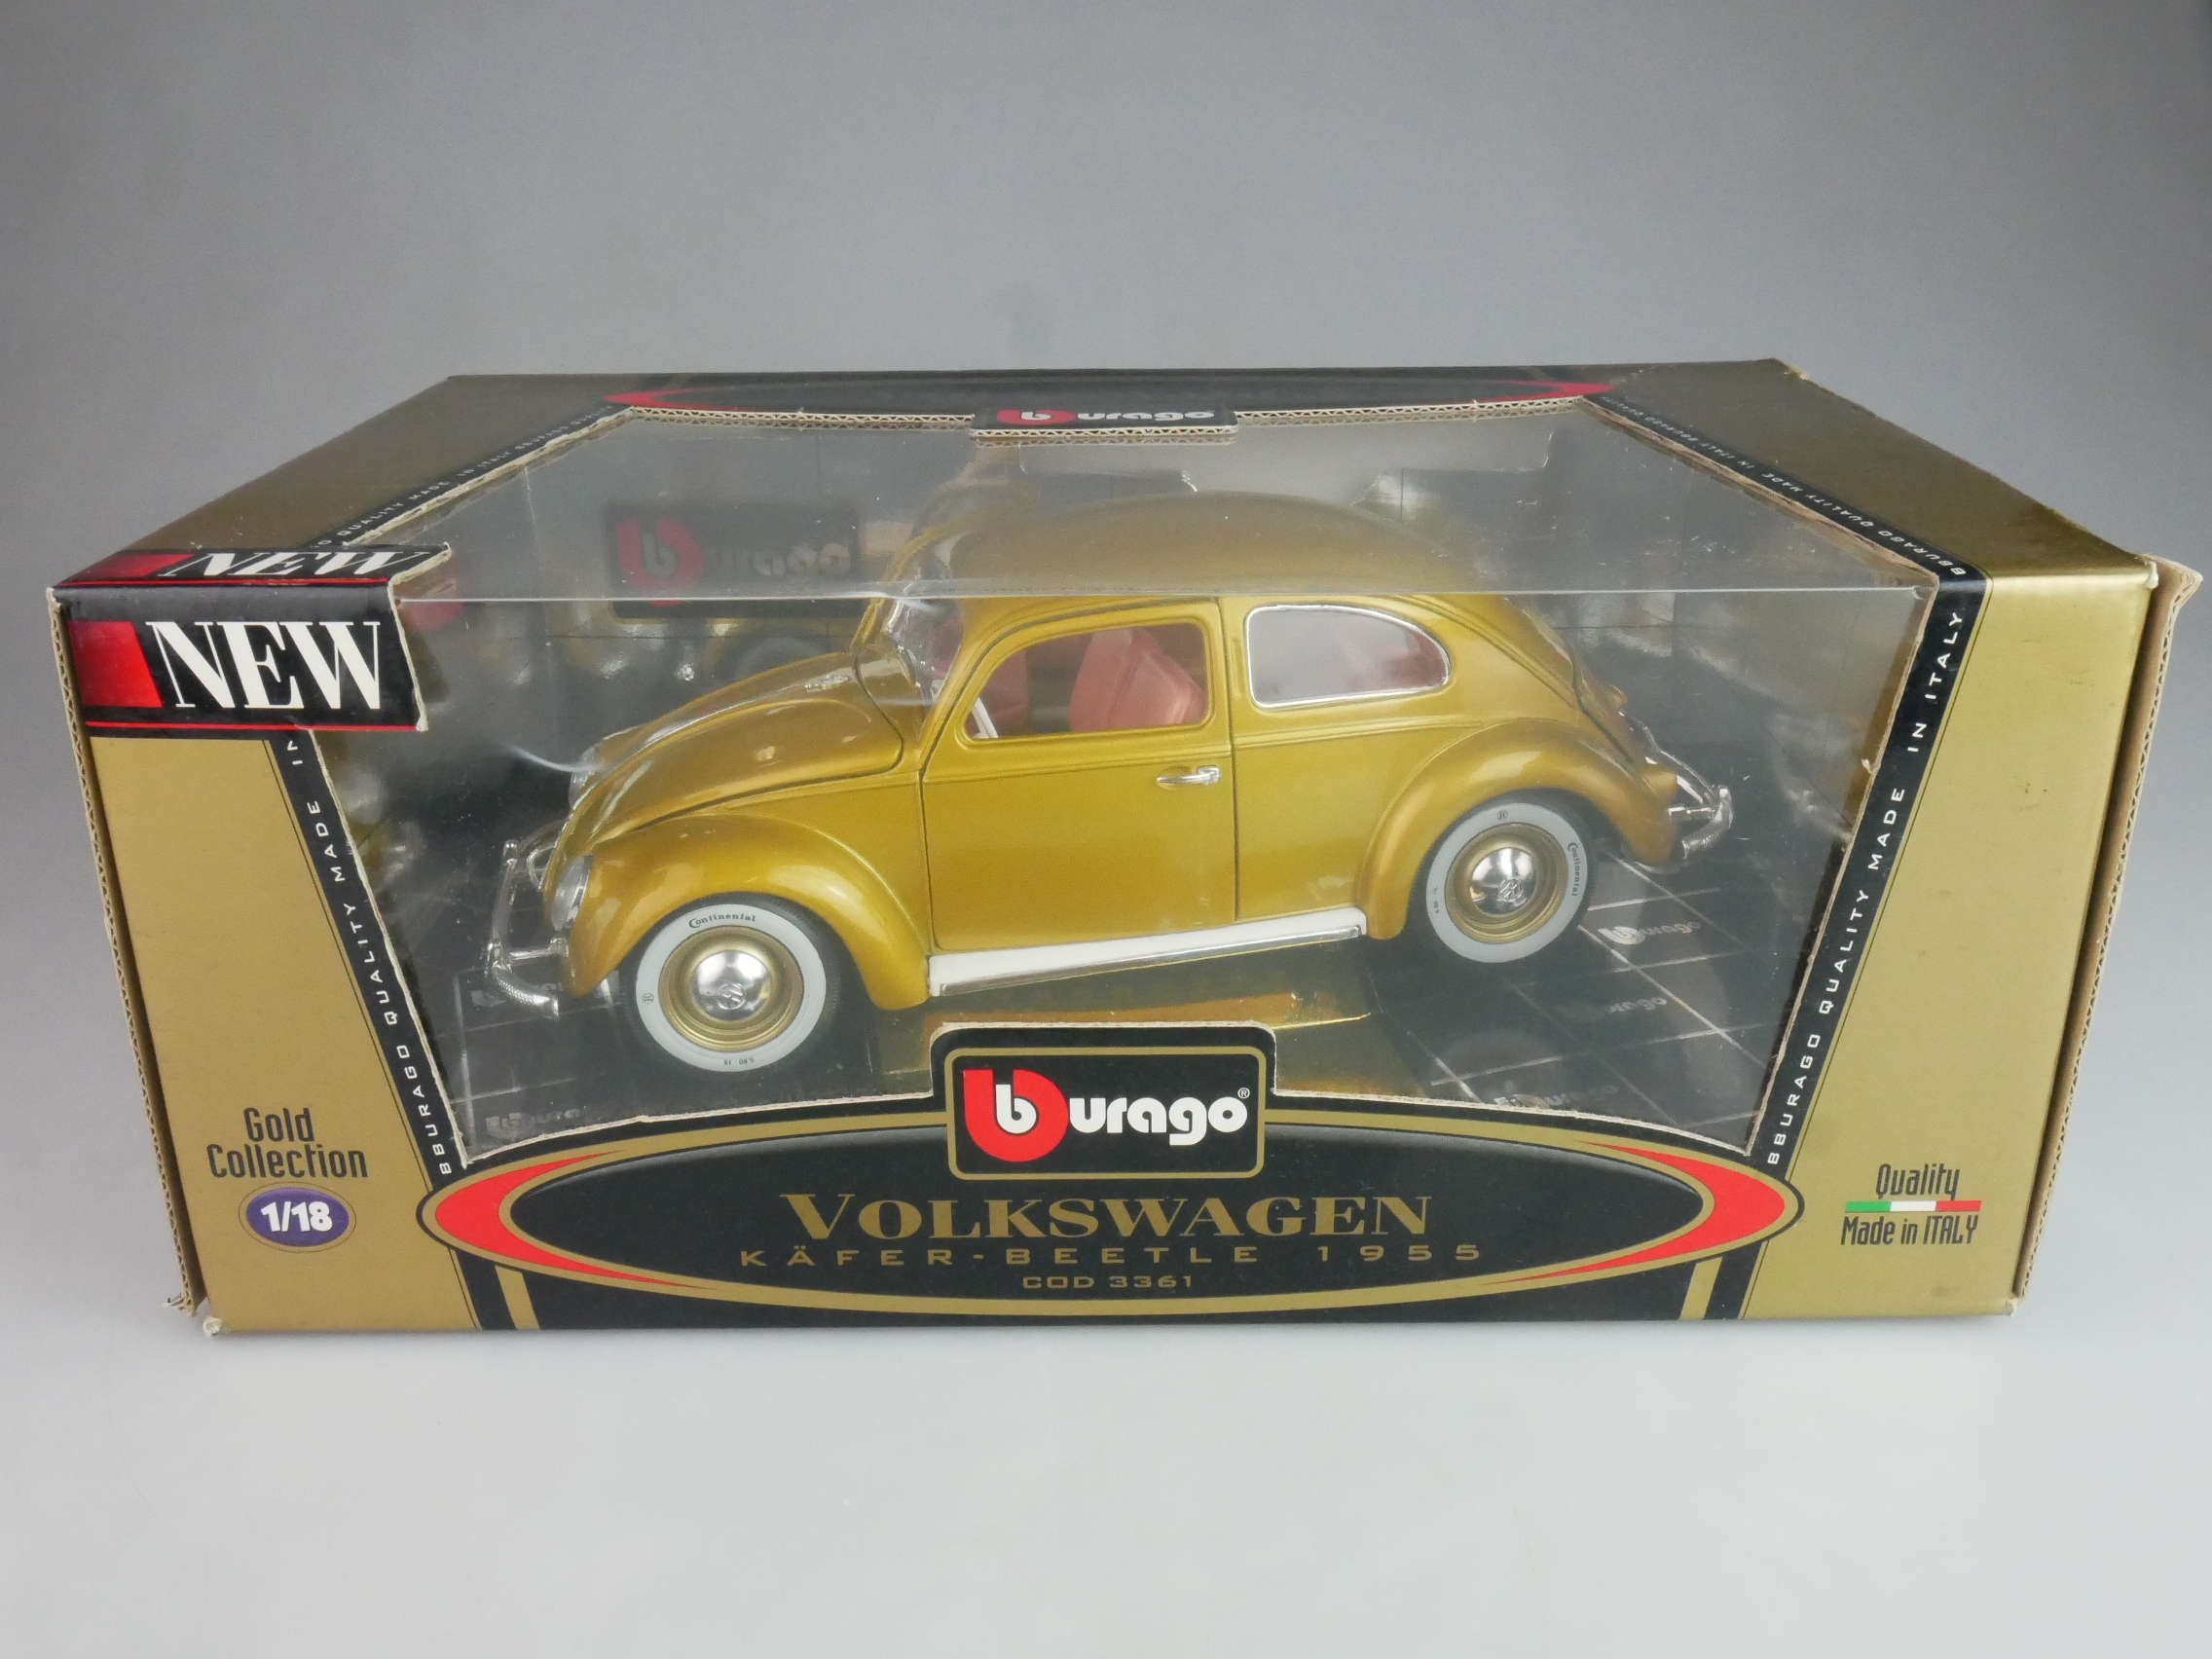 Bburago 1/18 Volkswagen VW Käfer Beetle 1955 Gold Collection 3361 + Box 125647